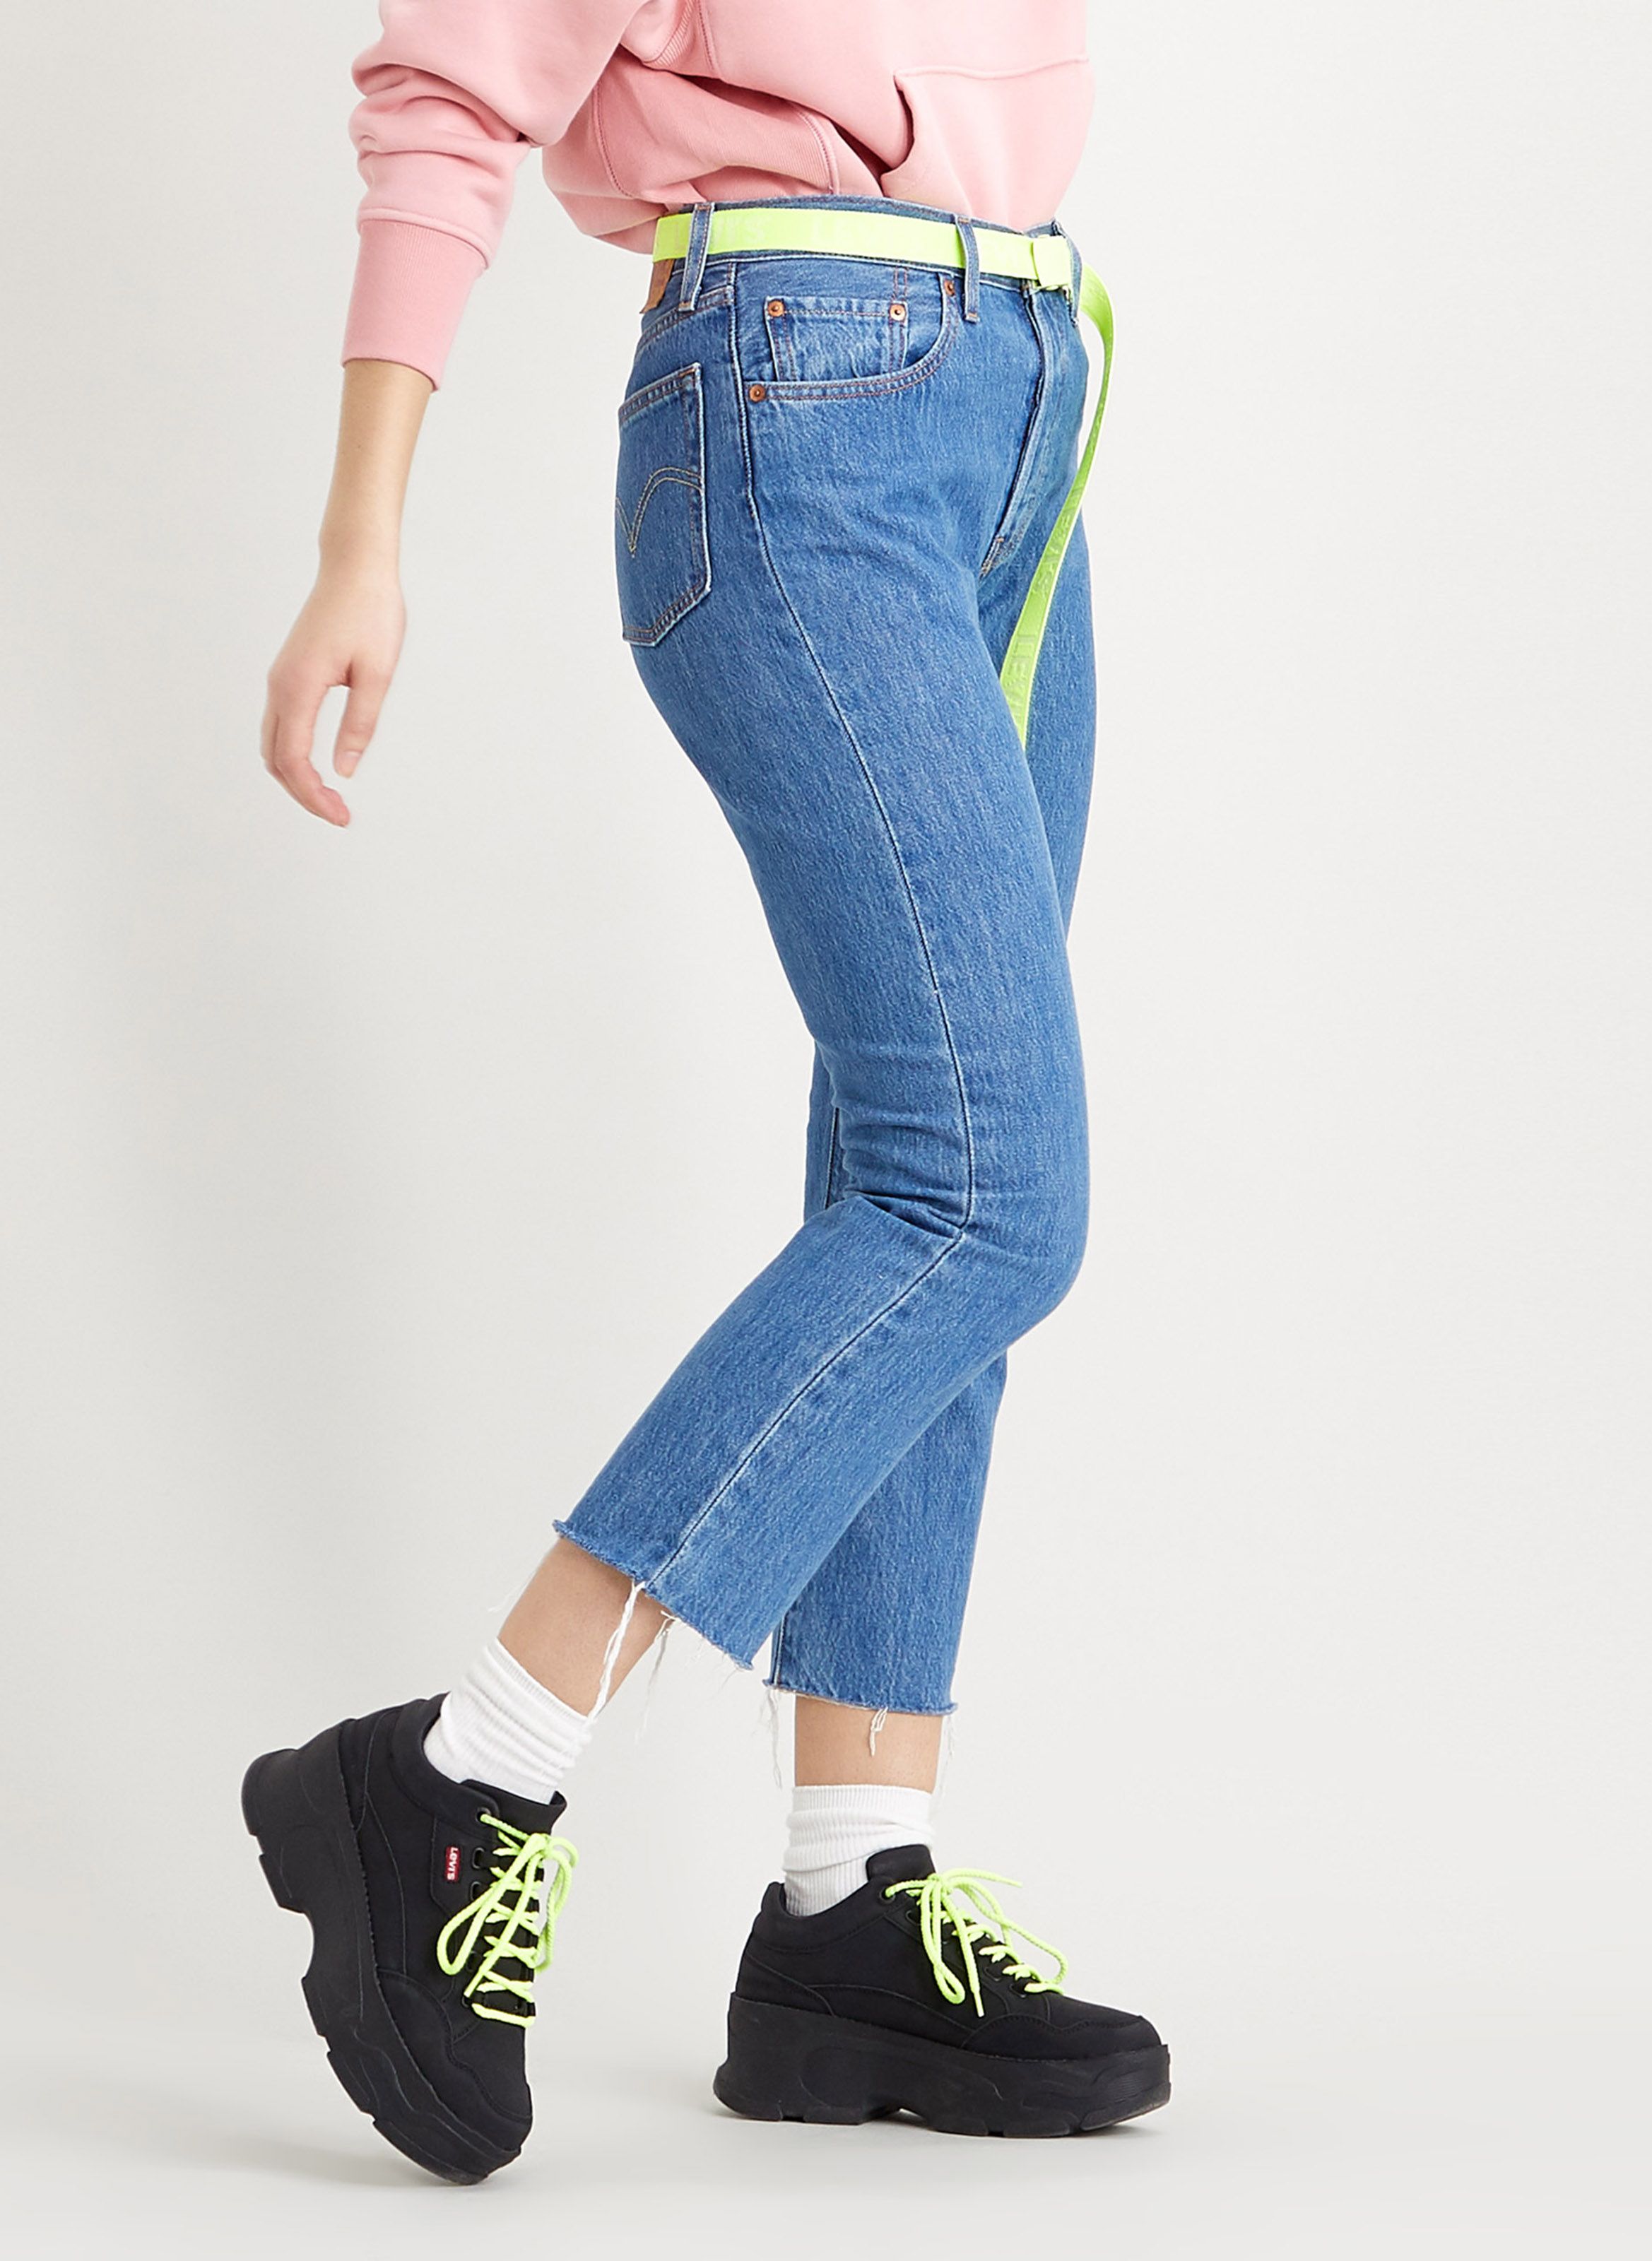 women's levis jeans sale